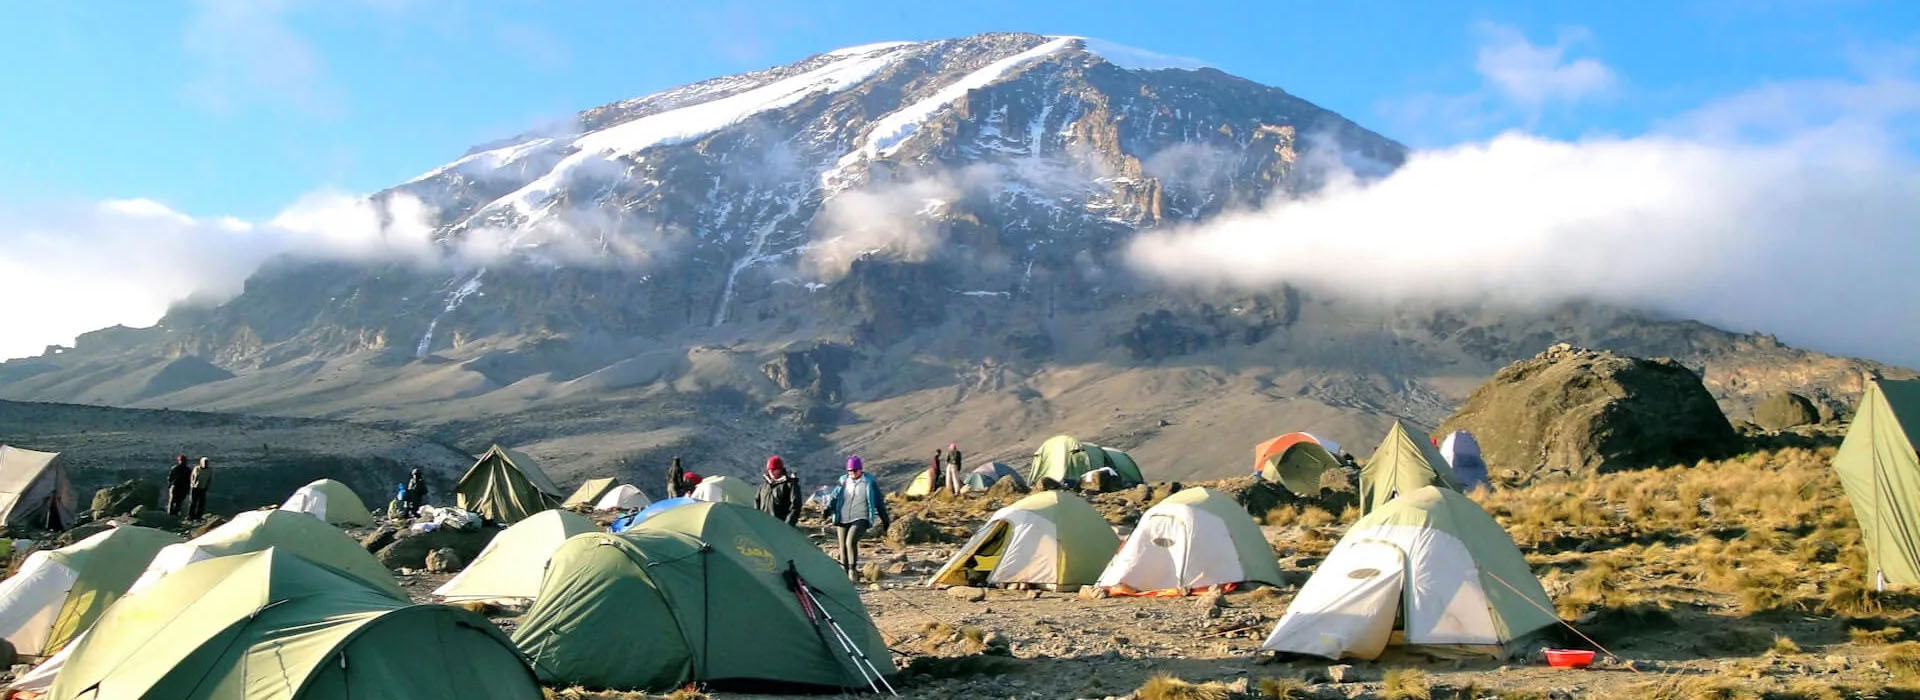 Kilimanjaro Tents